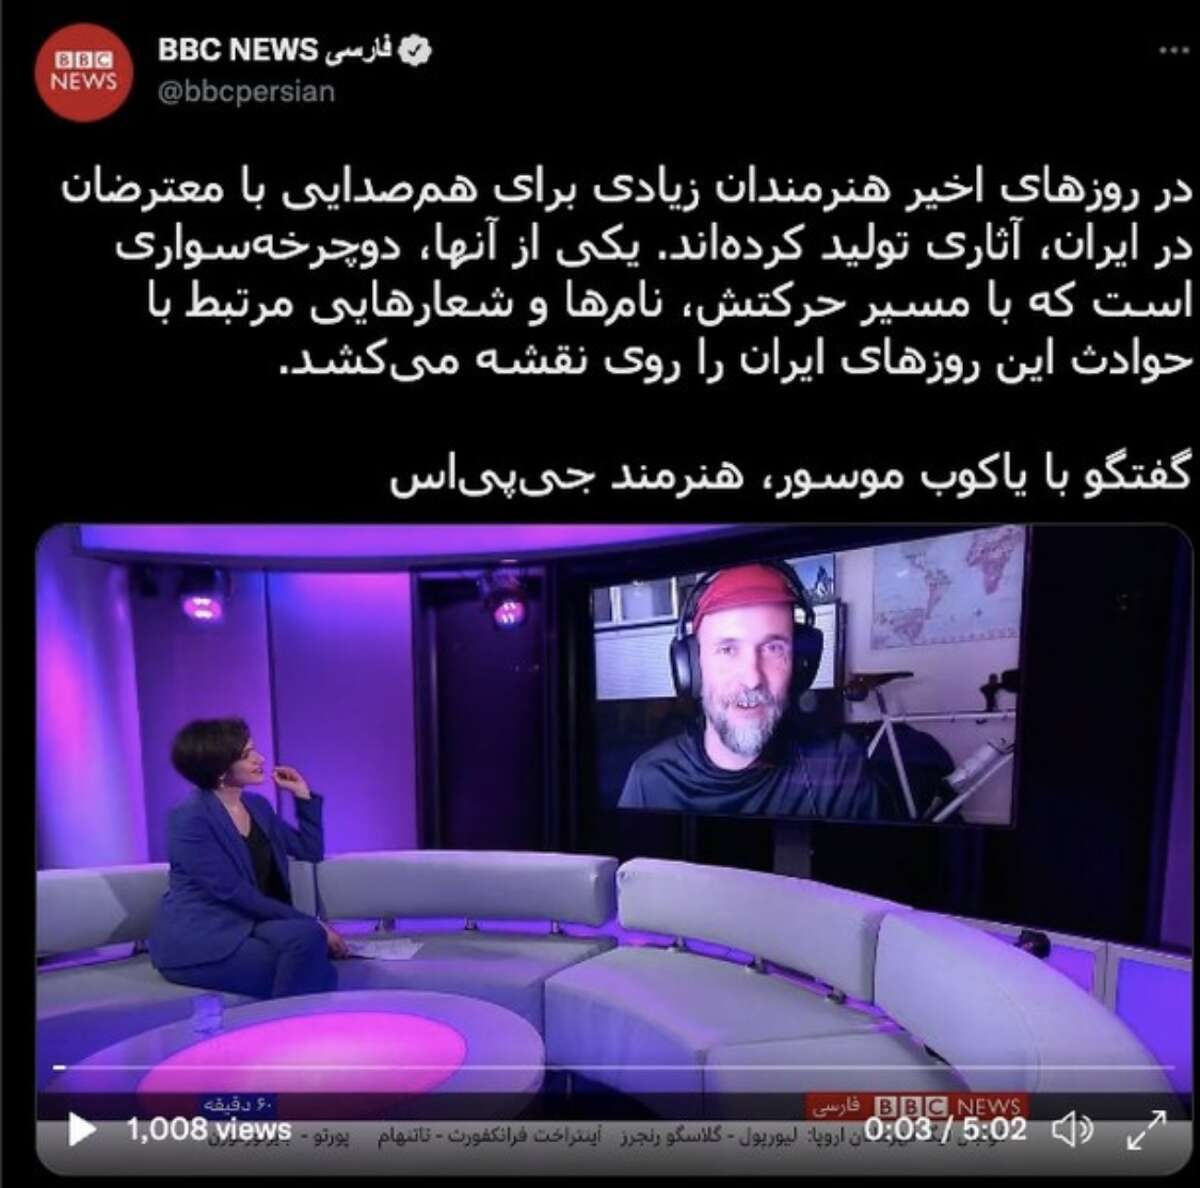 Jakub Mosur a été interviewé par BBC Persian à propos de son art GPS en soutien aux manifestations en Iran déclenchées par la mort de Mahsa Amini.